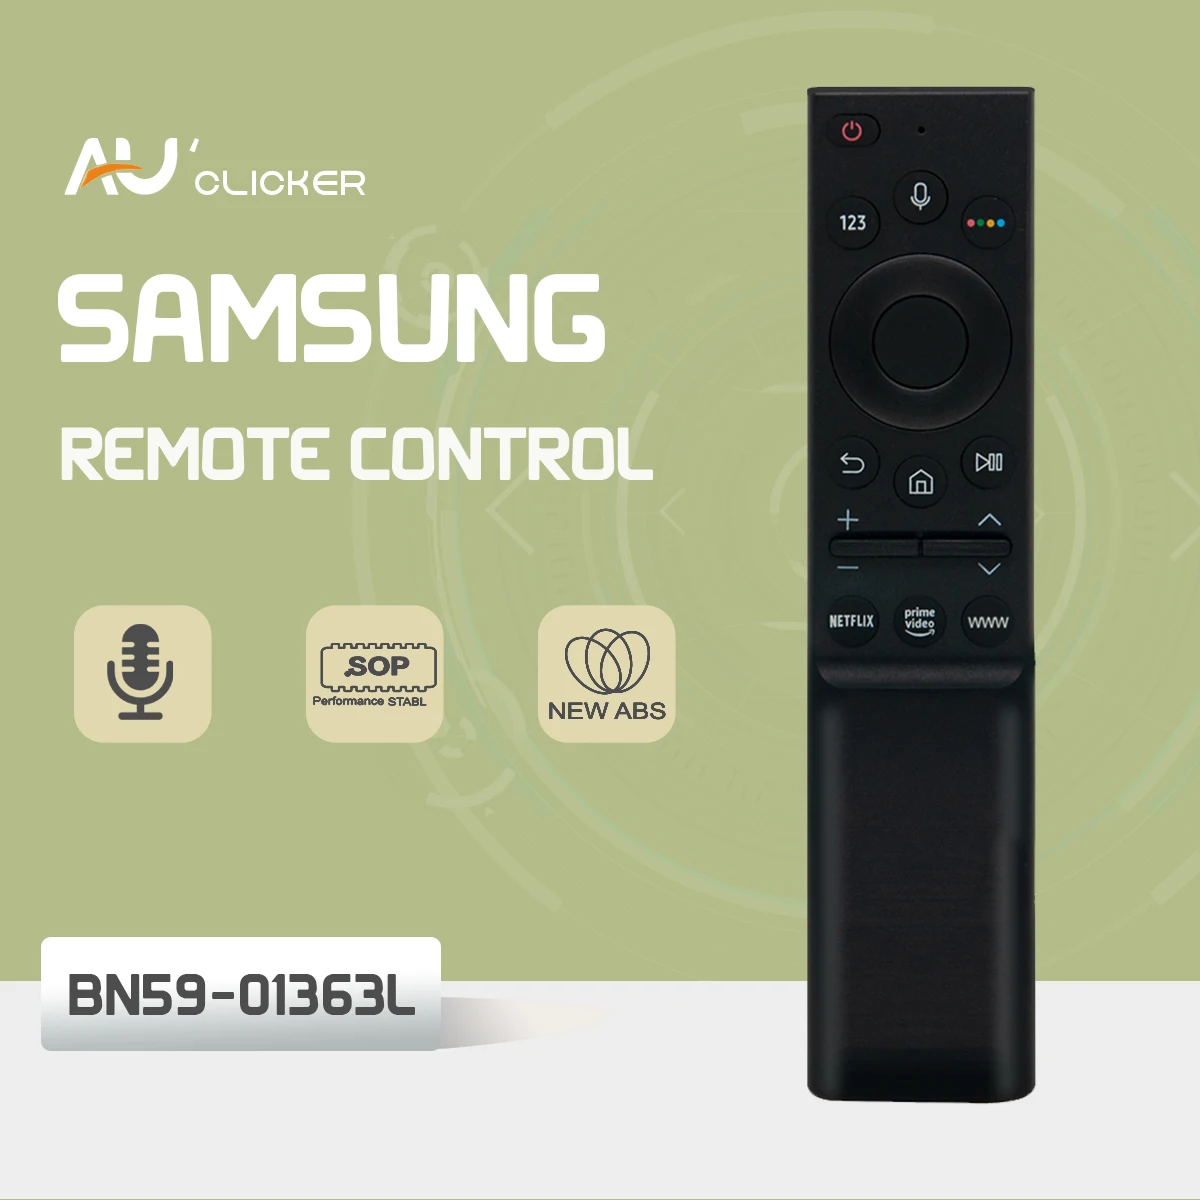 BN59-01363L Voice Remote Control BN59-01363 For Samsung Smar